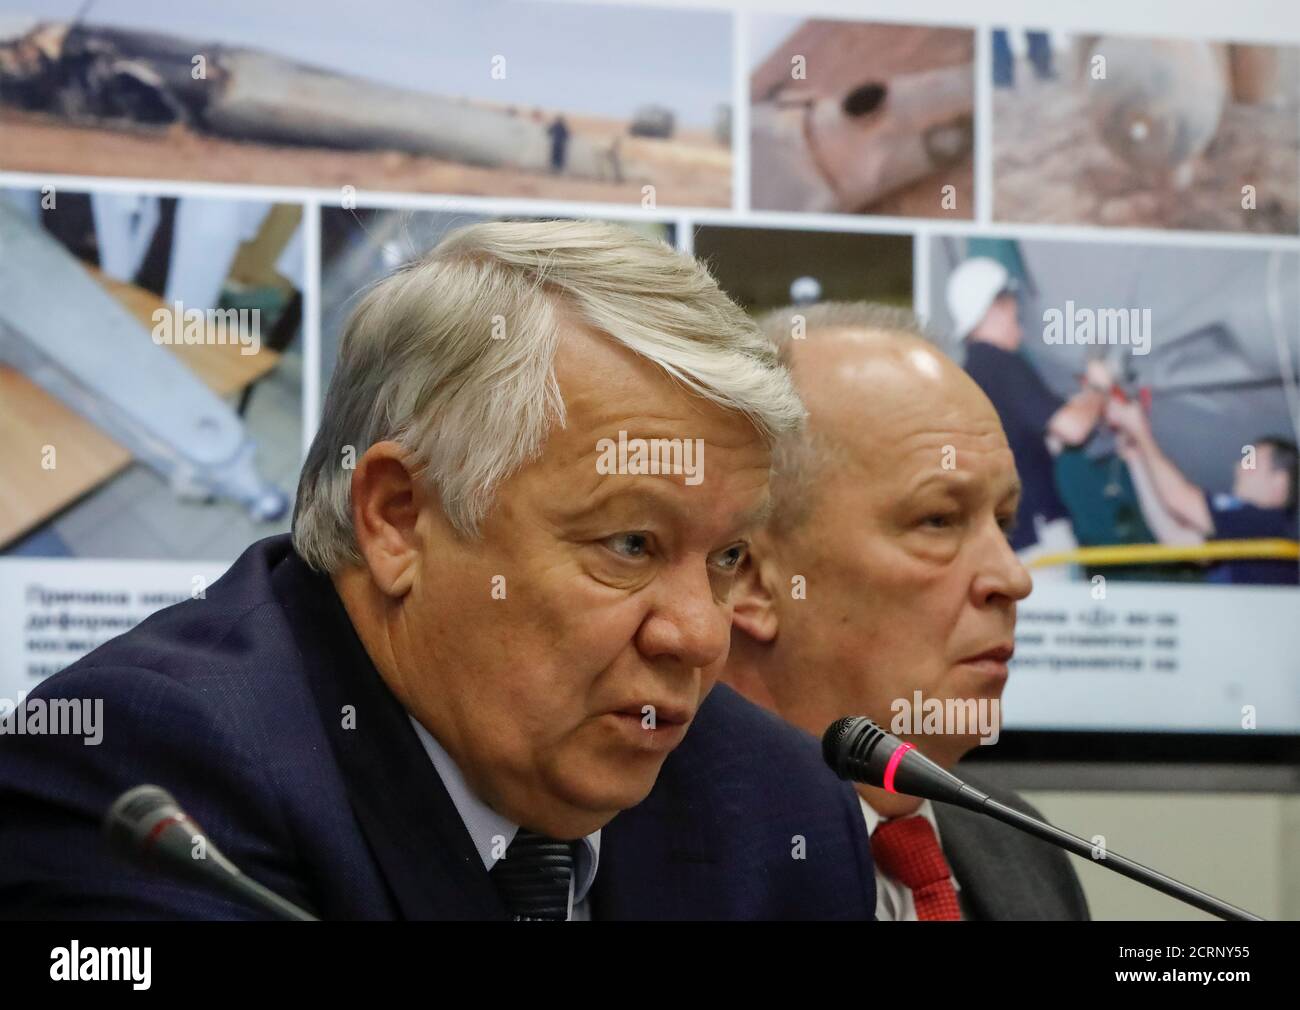 Oleg Skorobogatov, jefe de la comisión investigadora, habla en una conferencia de prensa sobre los resultados de la investigación sobre el fallido lanzamiento del cohete Soyuz el 11 de octubre, en el Centro Ruso de Control de Misiones de Korolev, en las afueras de Moscú, Rusia, el 1 de noviembre de 2018. REUTERS/Sergei Karpukhin Foto de stock